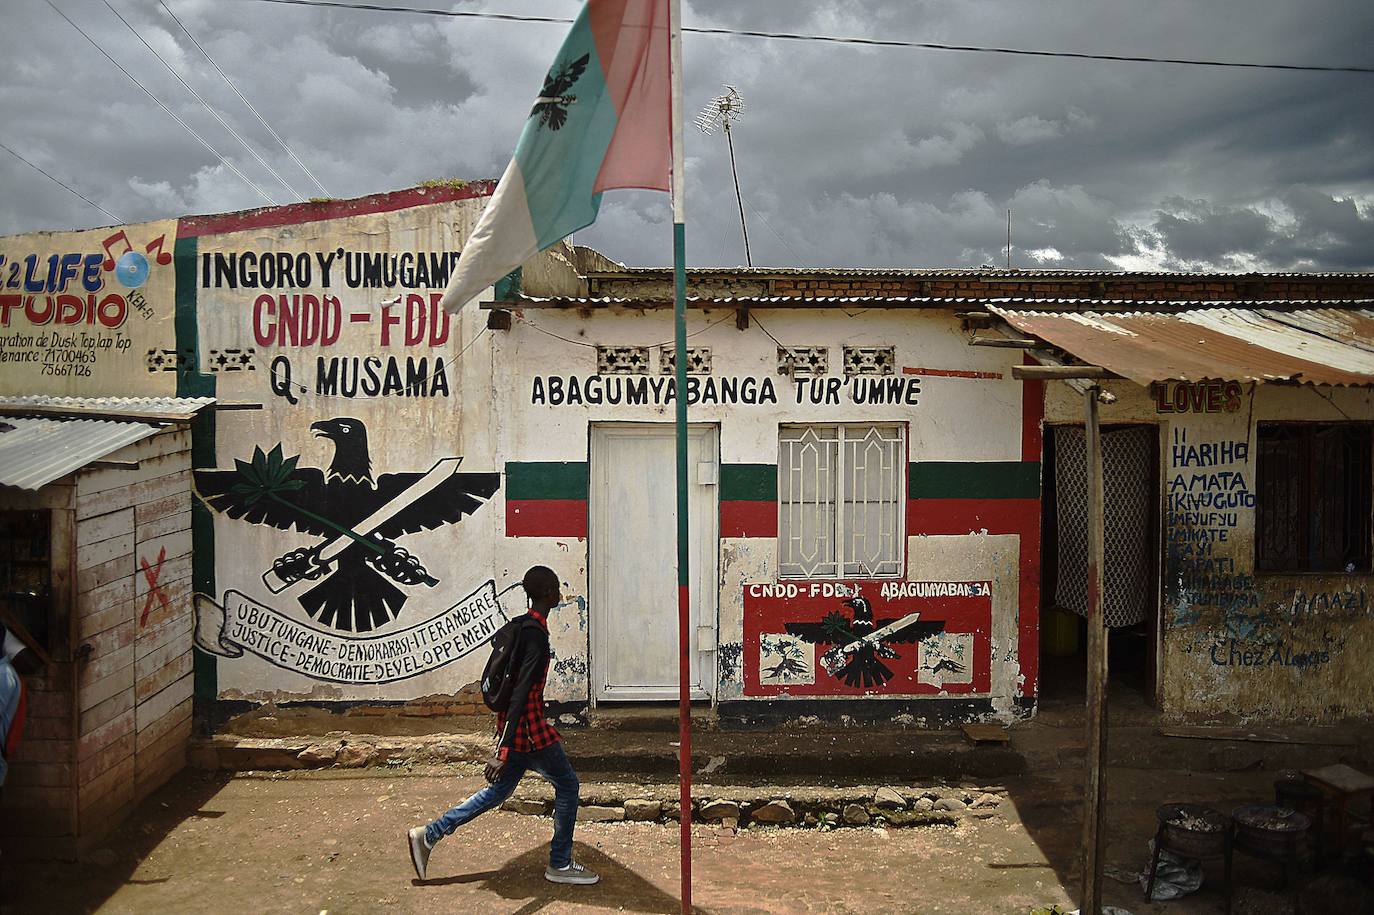 Burundi: se desaconseja el viaje salvo razones de extrema necesidad. Existe riesgo de terrorismo y la seguridad ciudadana es baja, ya que la presencia de armas de fuego es masiva. Además existe riesgo sísmico. Se desaconseja visitar las zonas fronterizas con la RDC (República Democrática del Congo), las provincias Cibitoke y Bubanza, el Parque Nacional de Ruvubu y el Parque Nacional de Kibira.